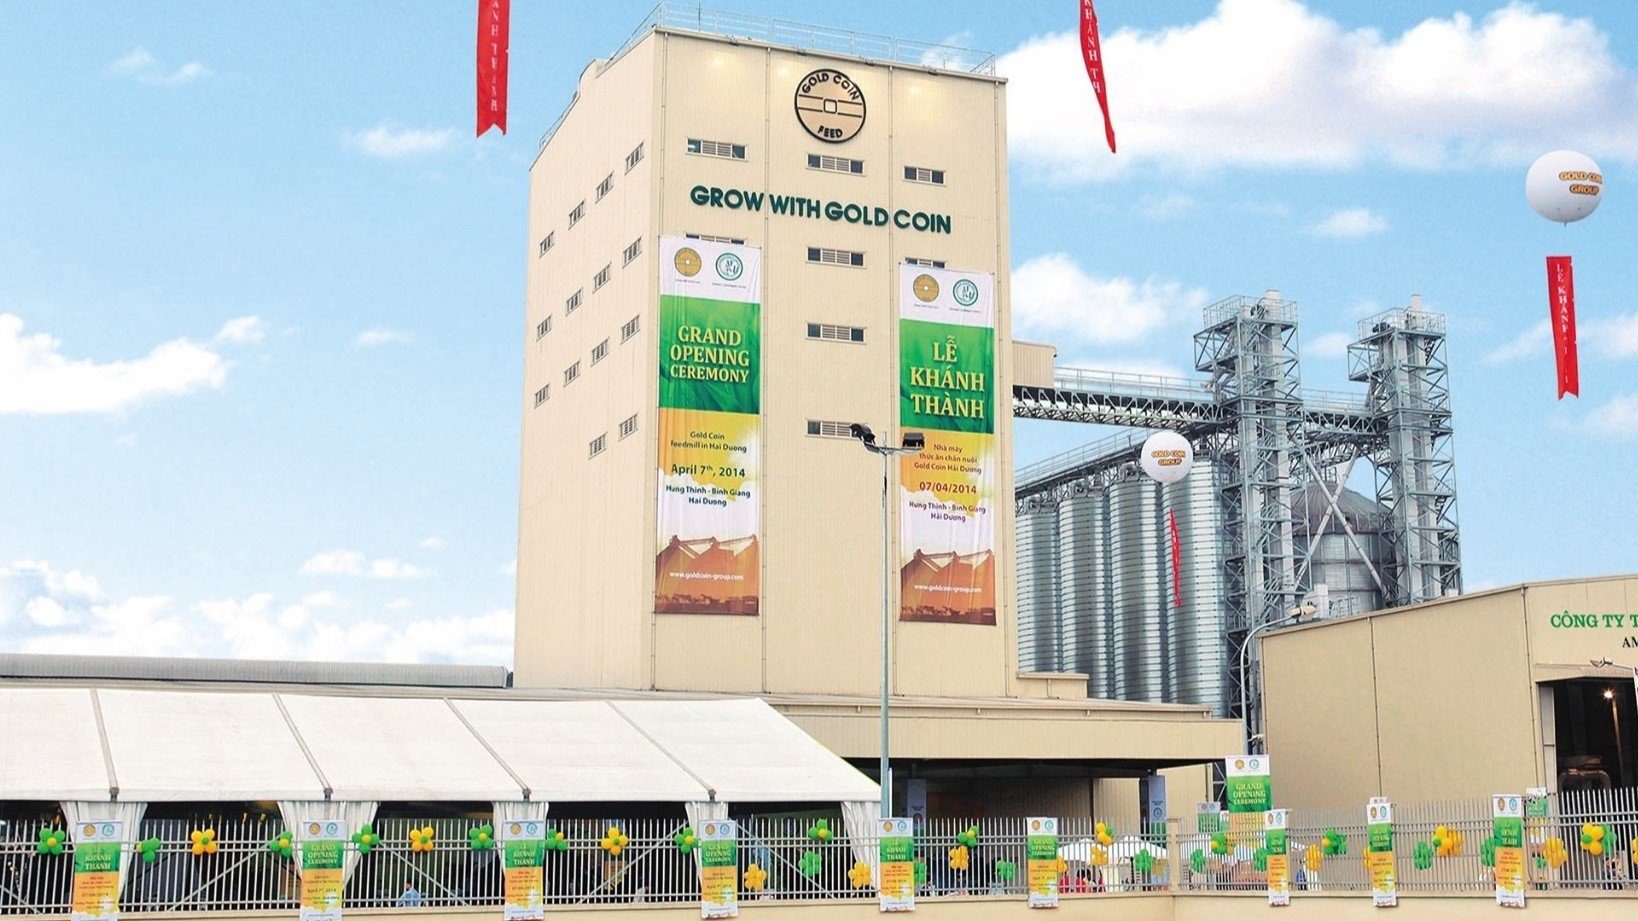 Nhà máy sản xuất thức ăn chăn nuôi Gold Coin ở tỉnh Hải Dương, miền Bắc Việt Nam.  Ảnh do AFC cung cấp.